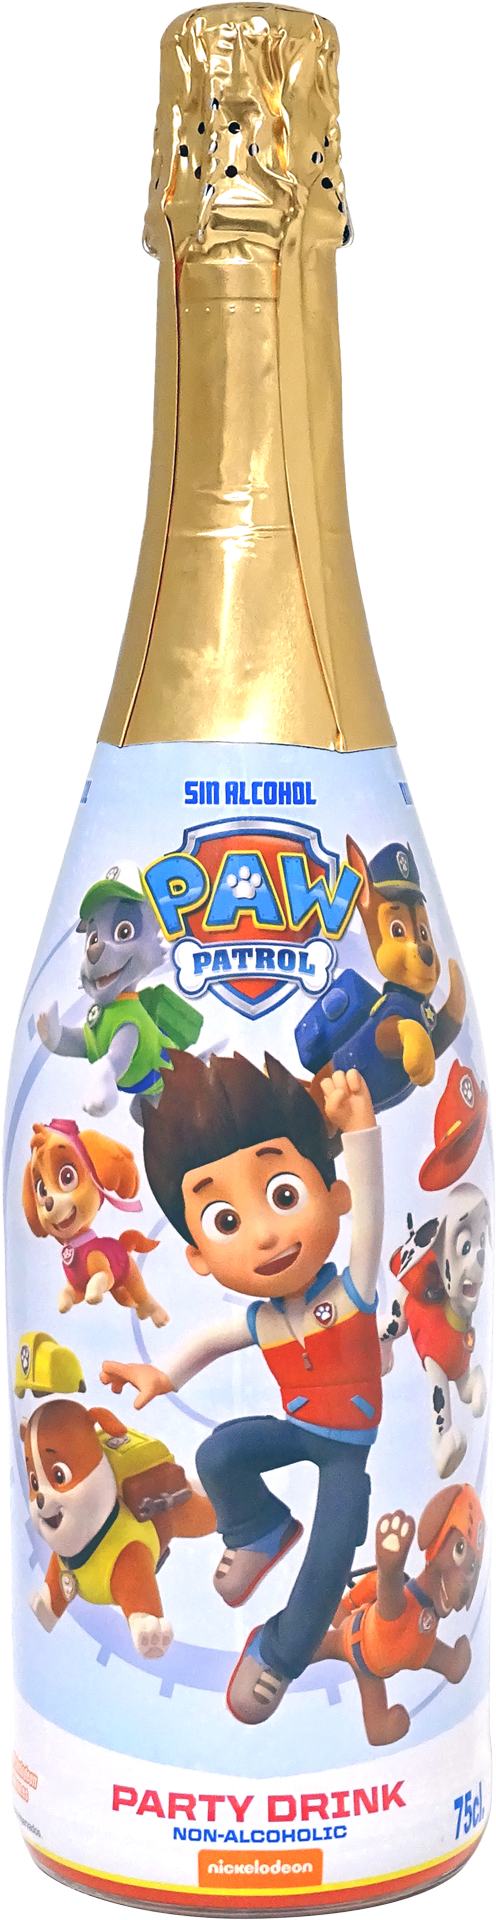 PAW PATROL BOY